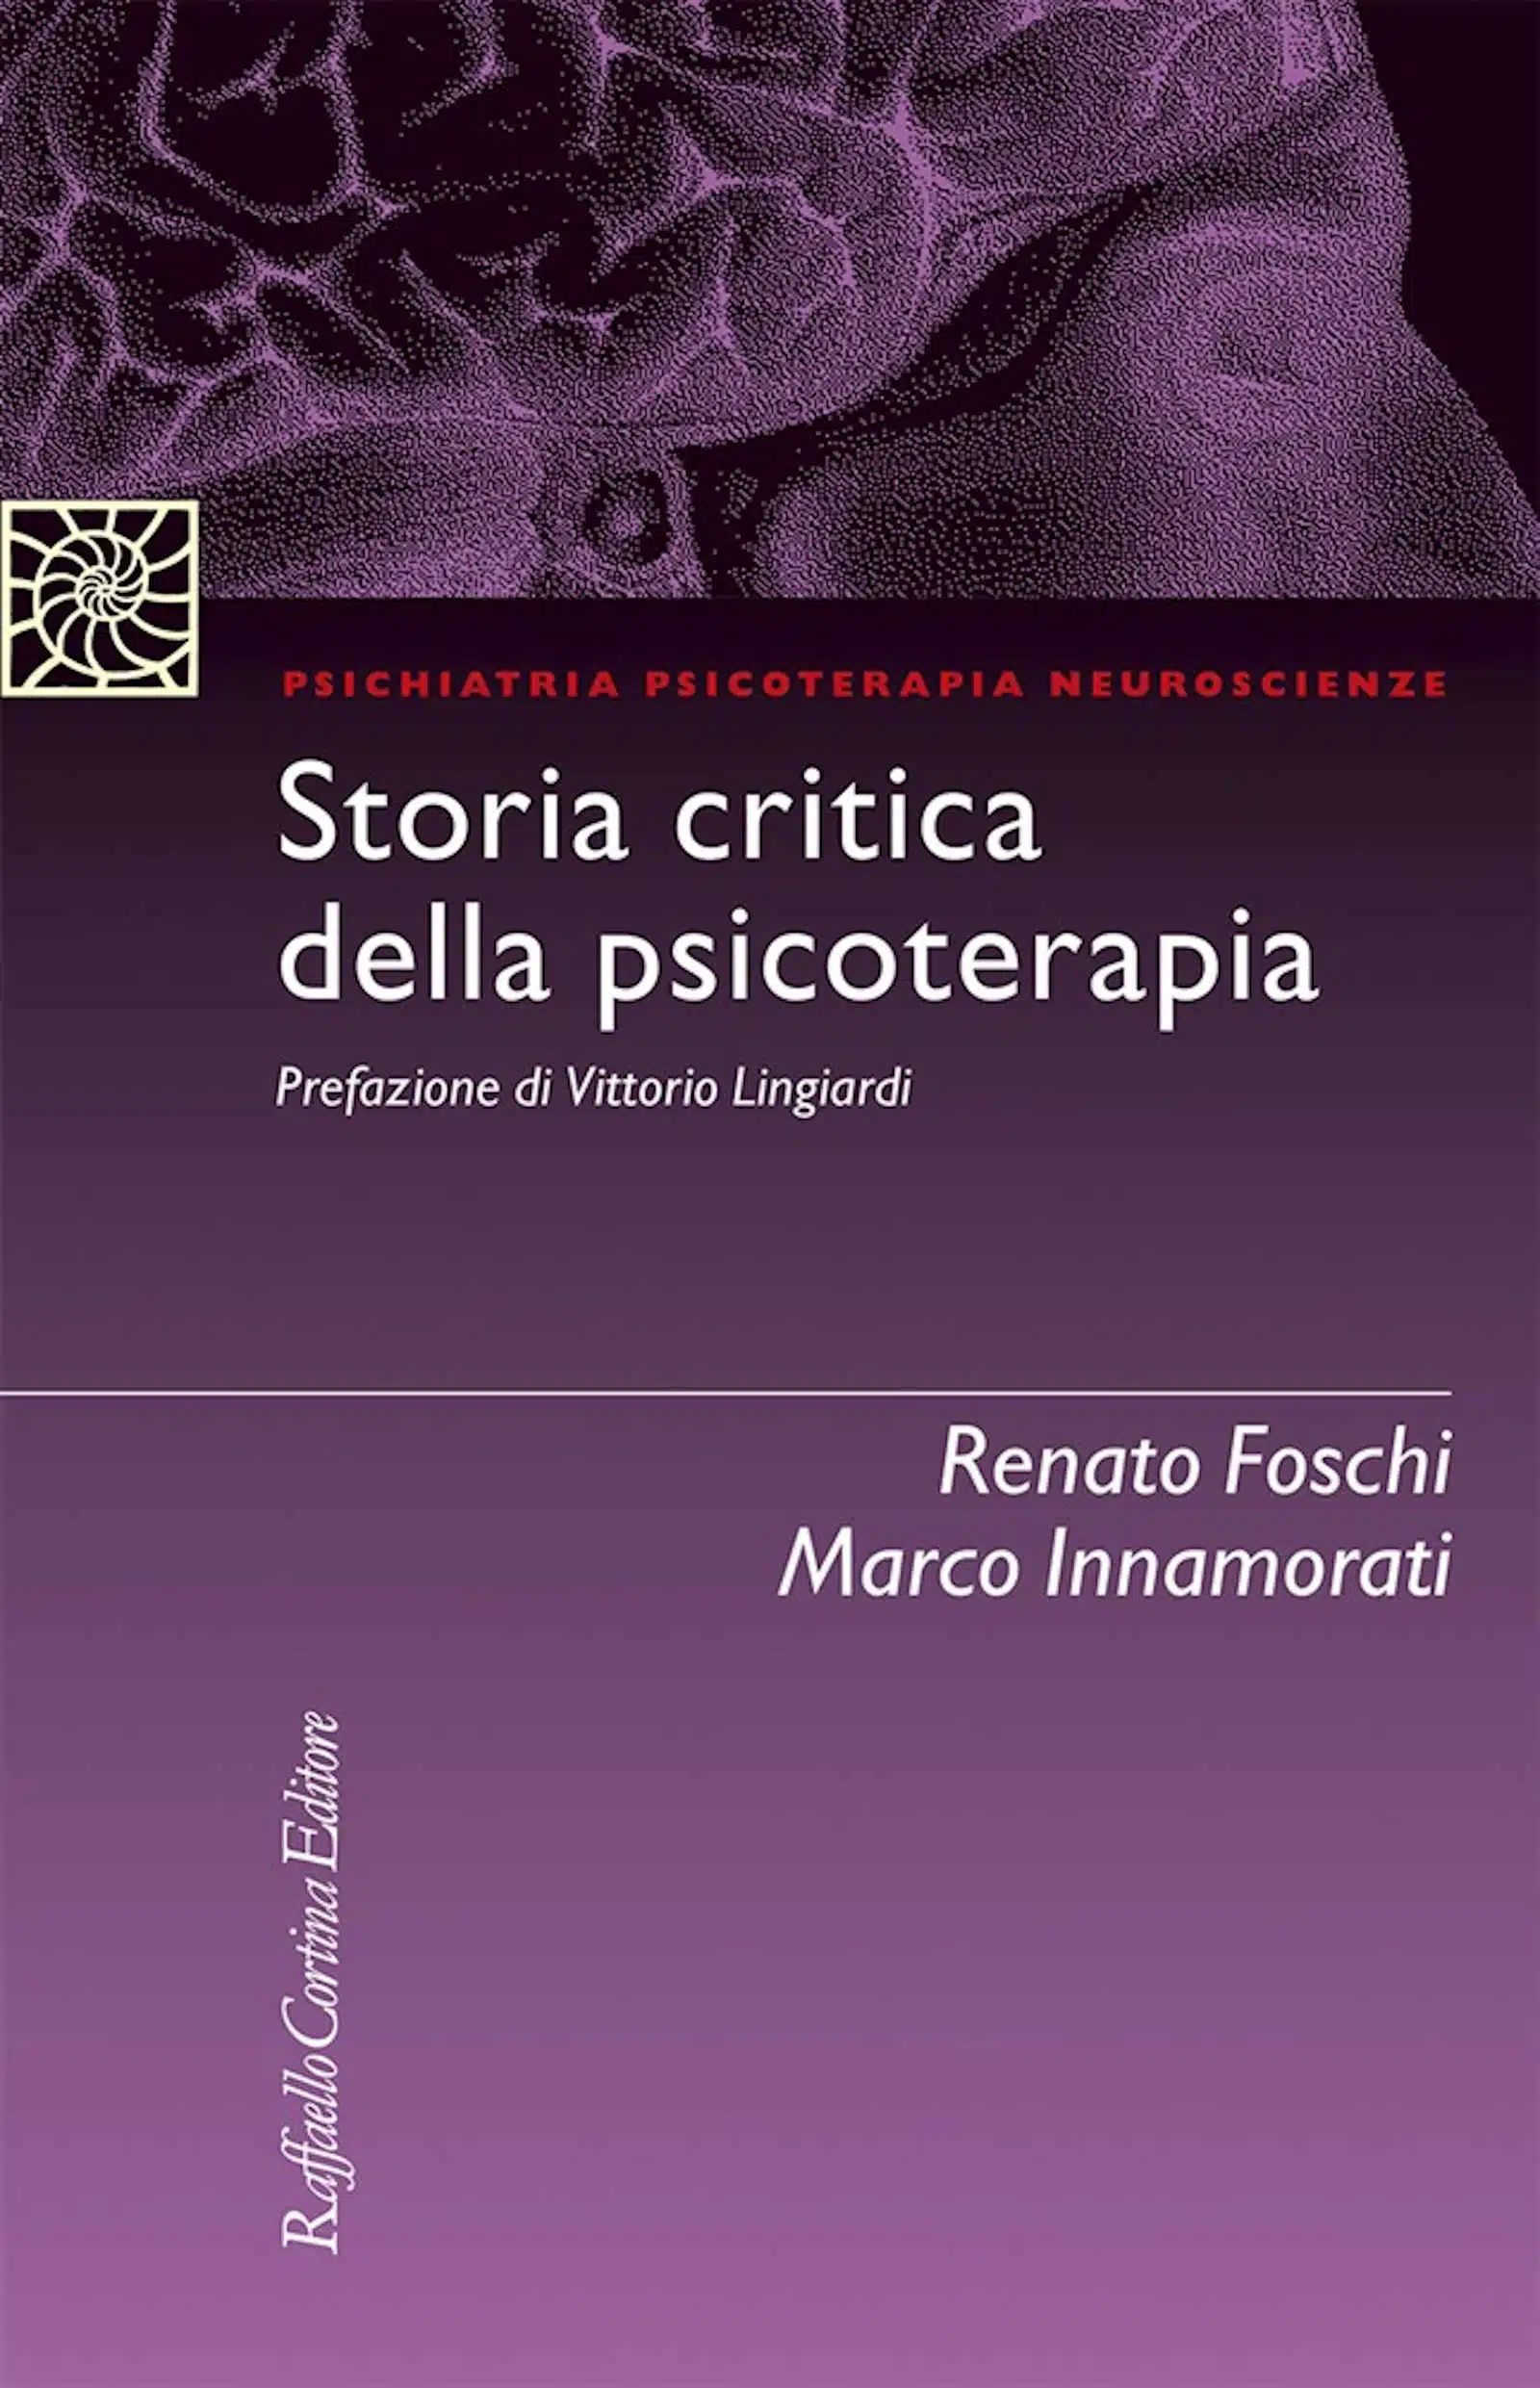 Storia critica della psicoterapia di R Foschi e M Innamorati Recensione Featured